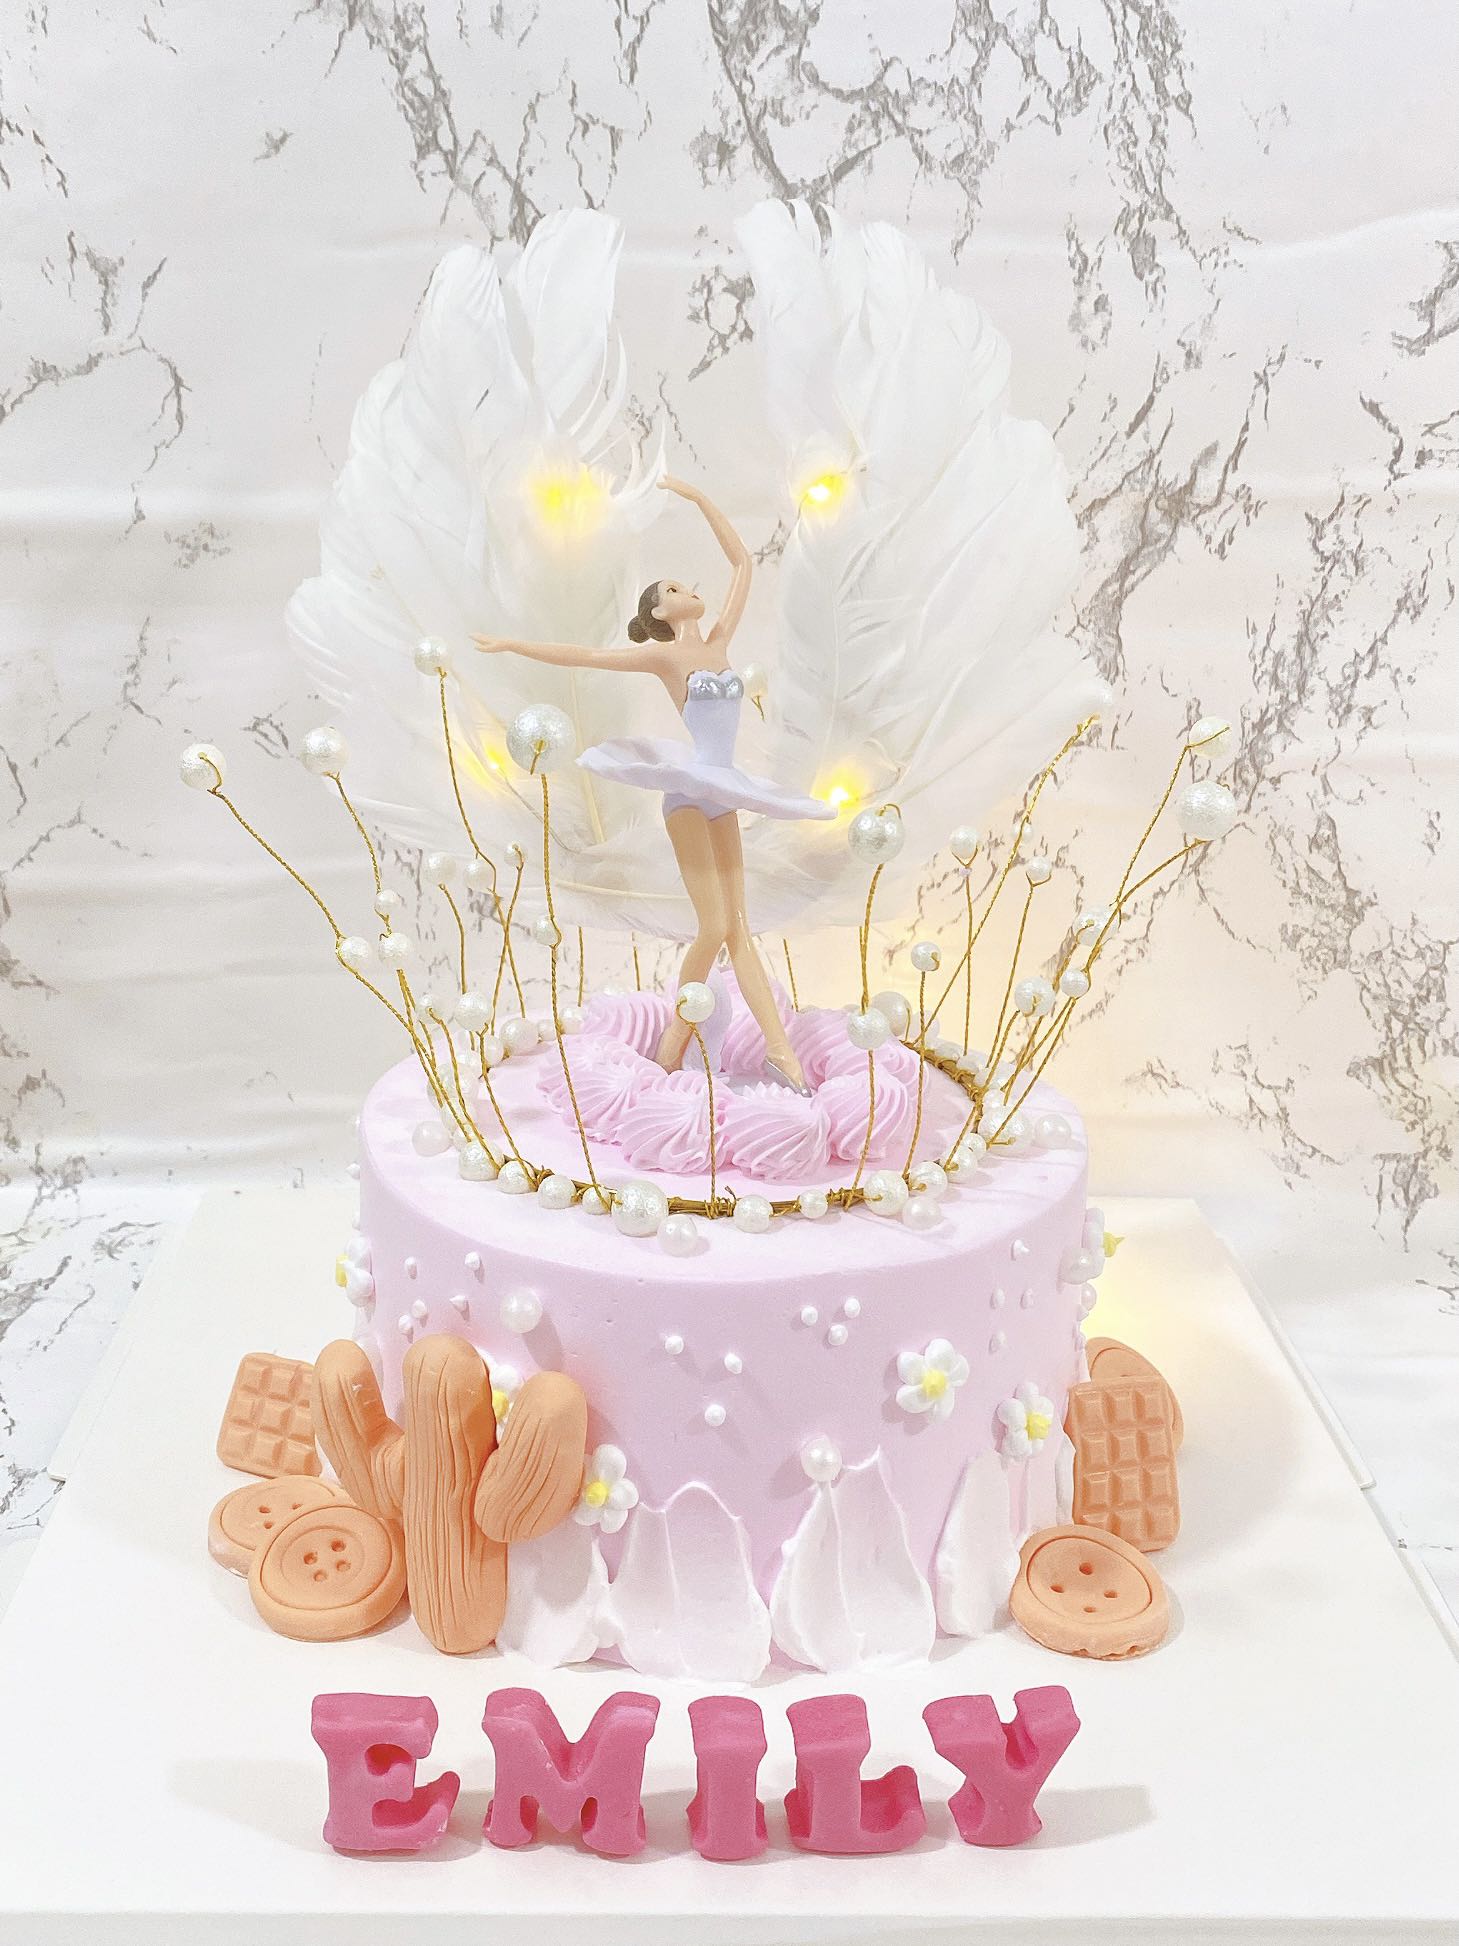 Ballerina Ballet Cake, Food & Drinks, Homemade Bakes on Carousell